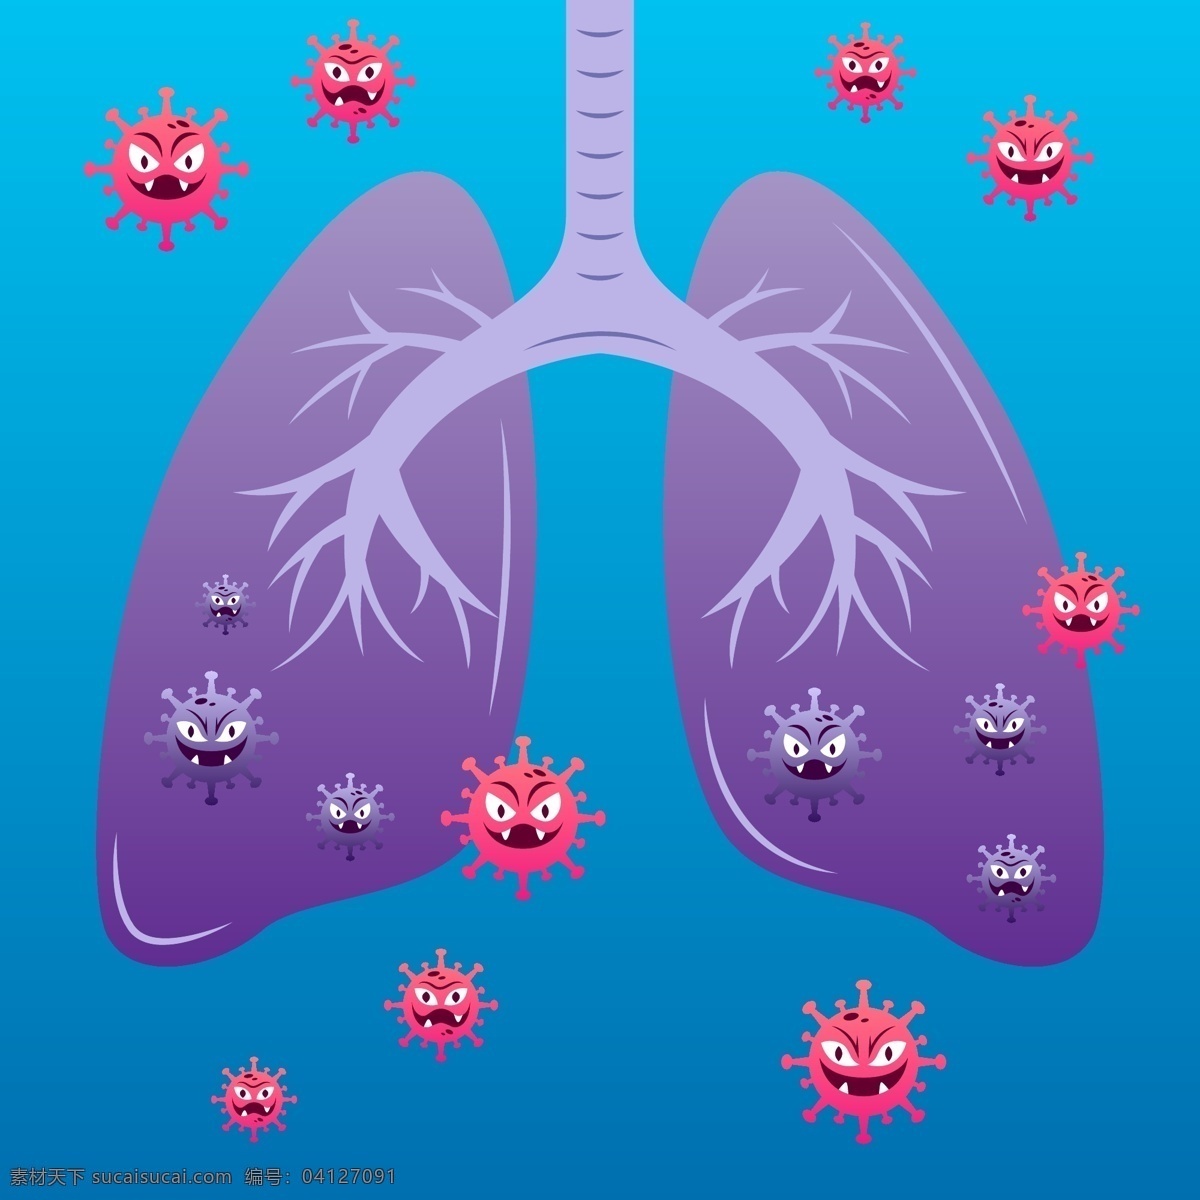 病毒 攻击 肺部 创意 新冠肺炎 矢量图 矢量 高清图片